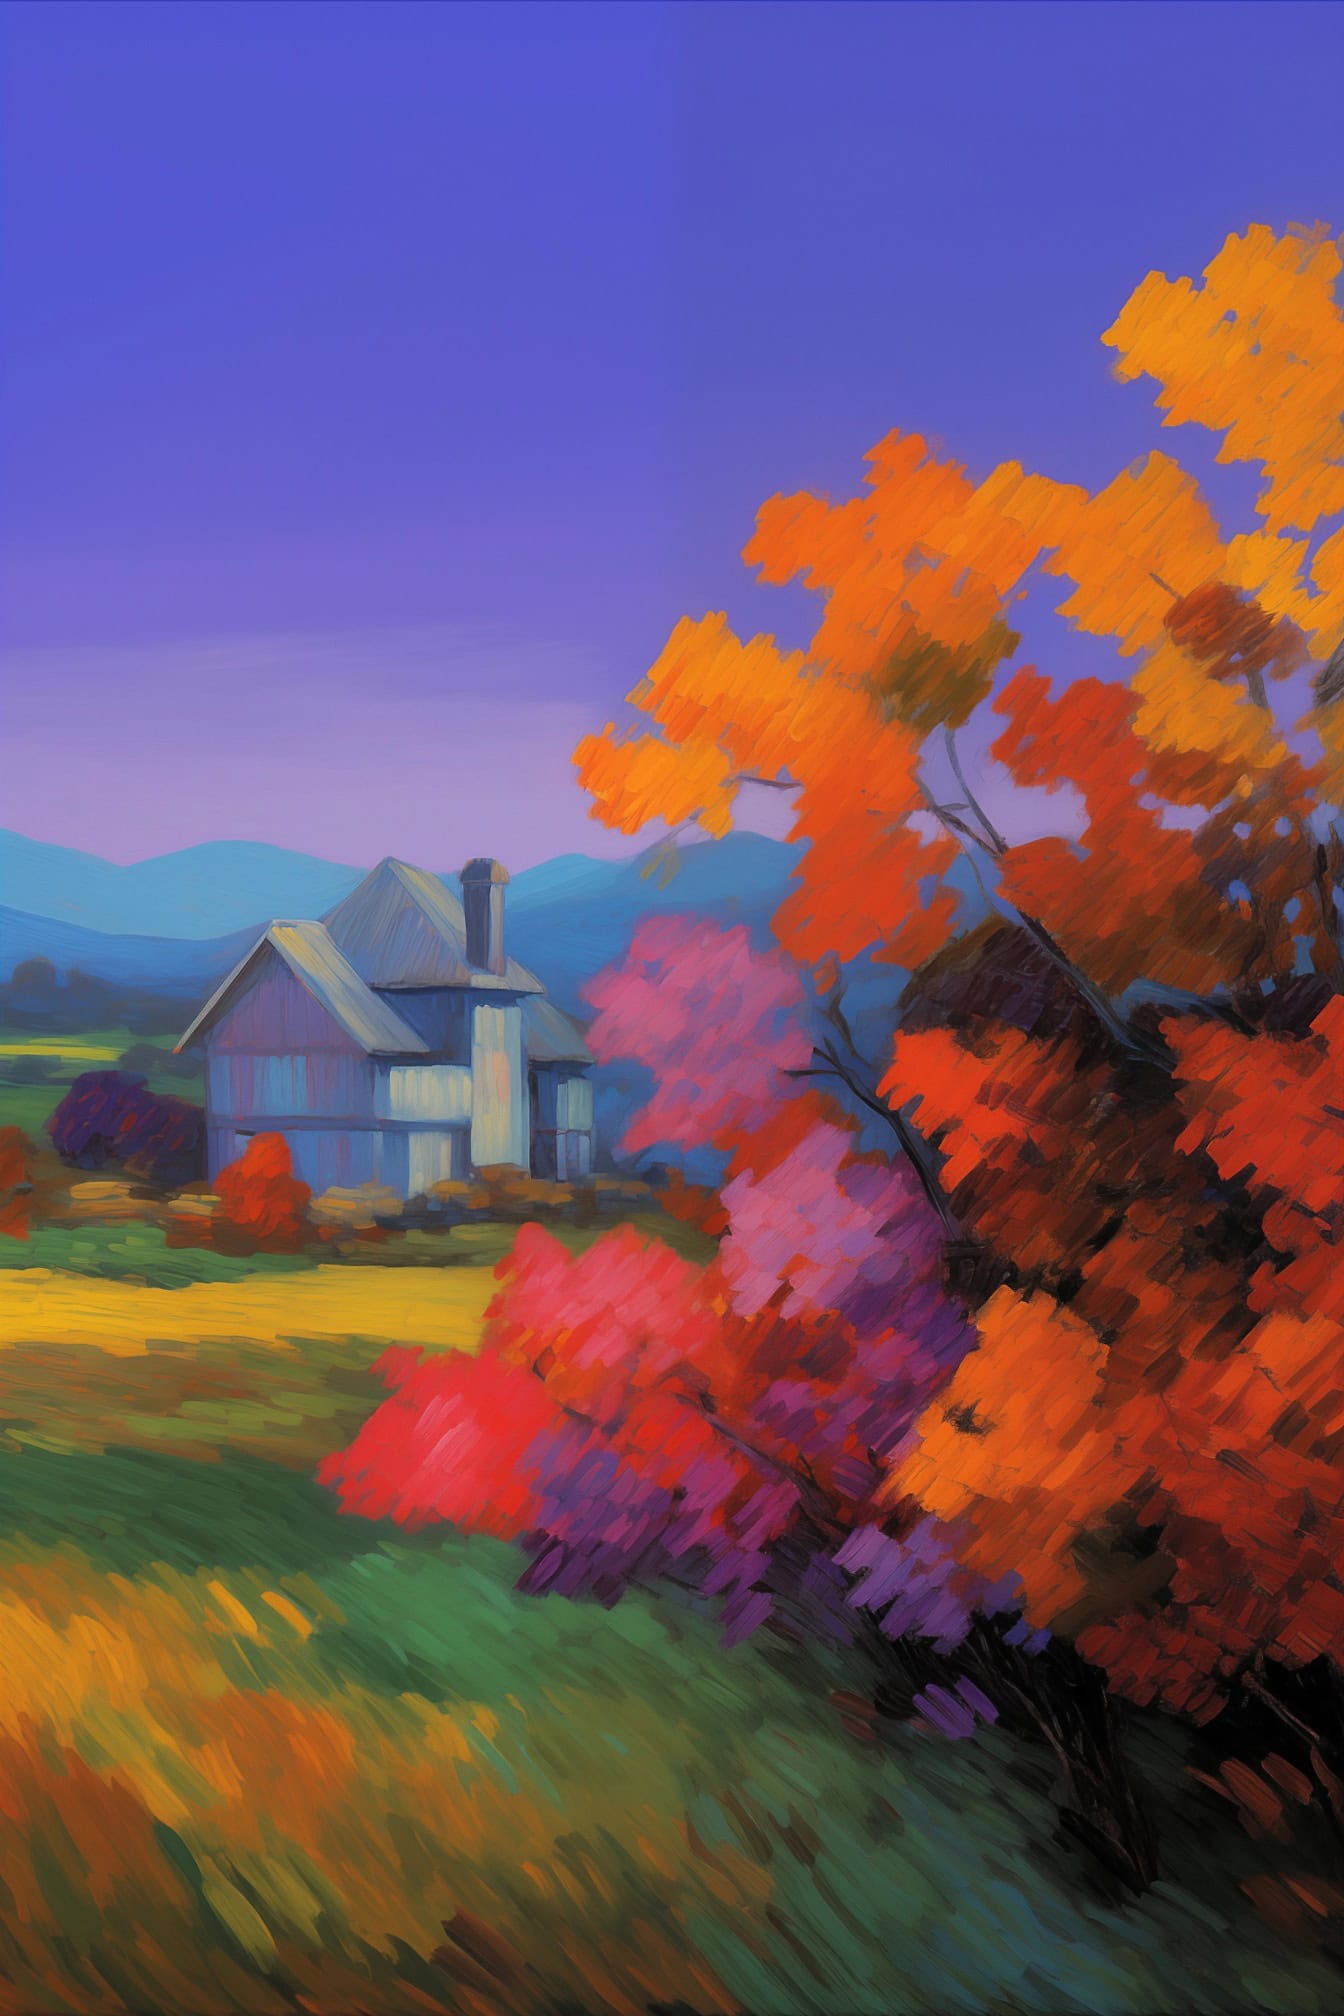 Impresszionista akvarell festmény egy vidéki házról alkonyatkor, egy fával, őszi levelekkel az előtérben